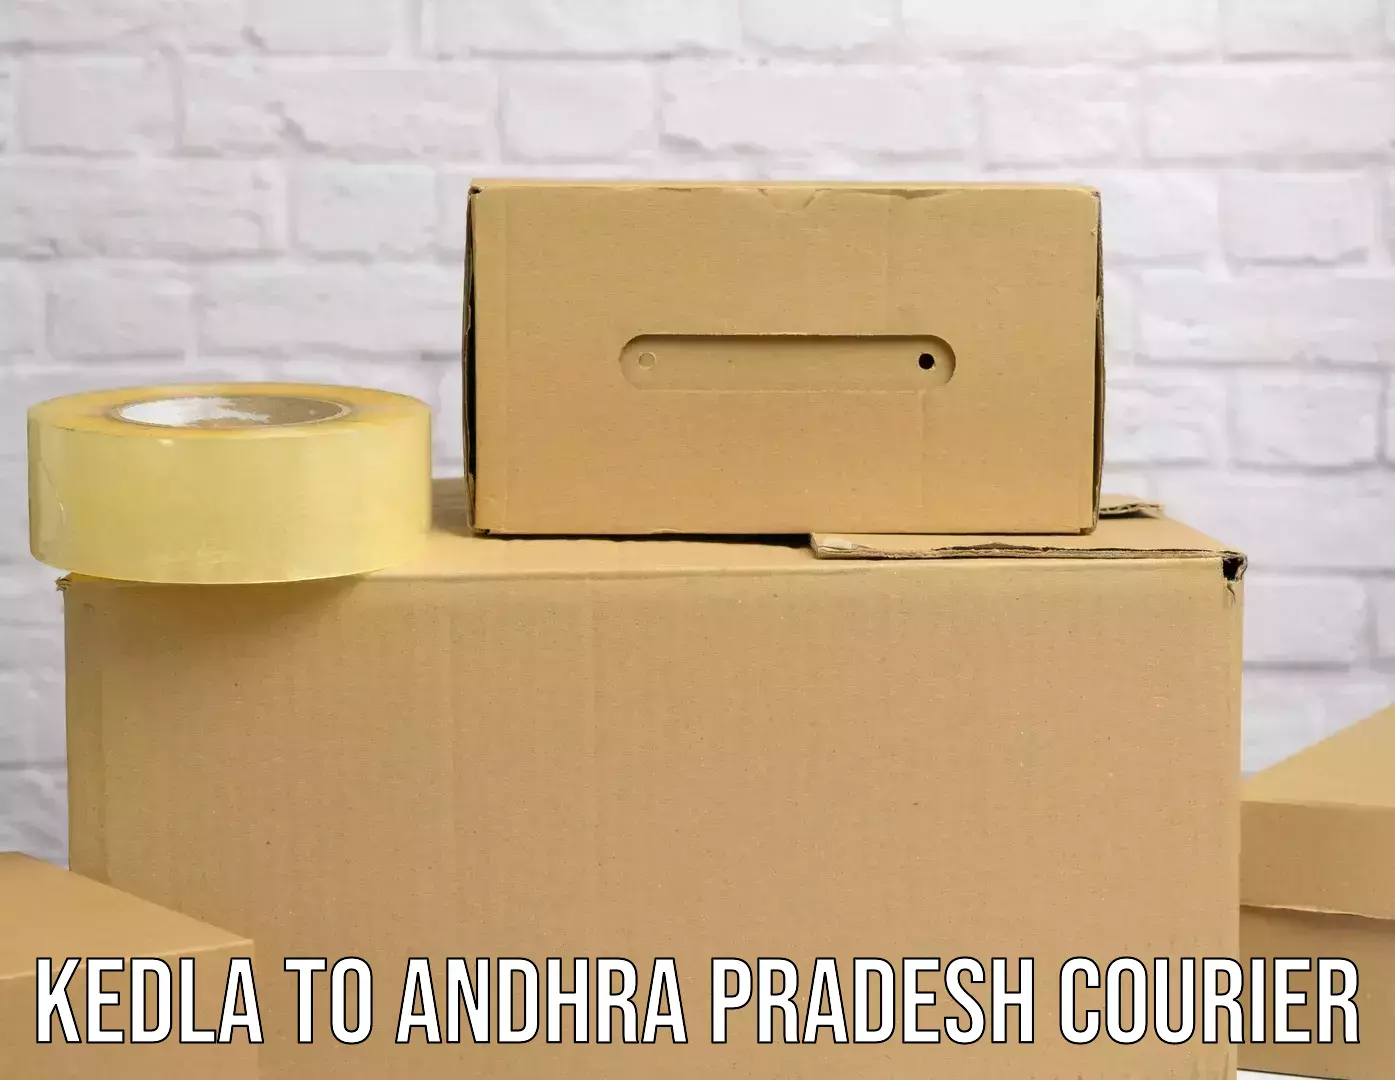 Custom courier solutions Kedla to Andhra Pradesh